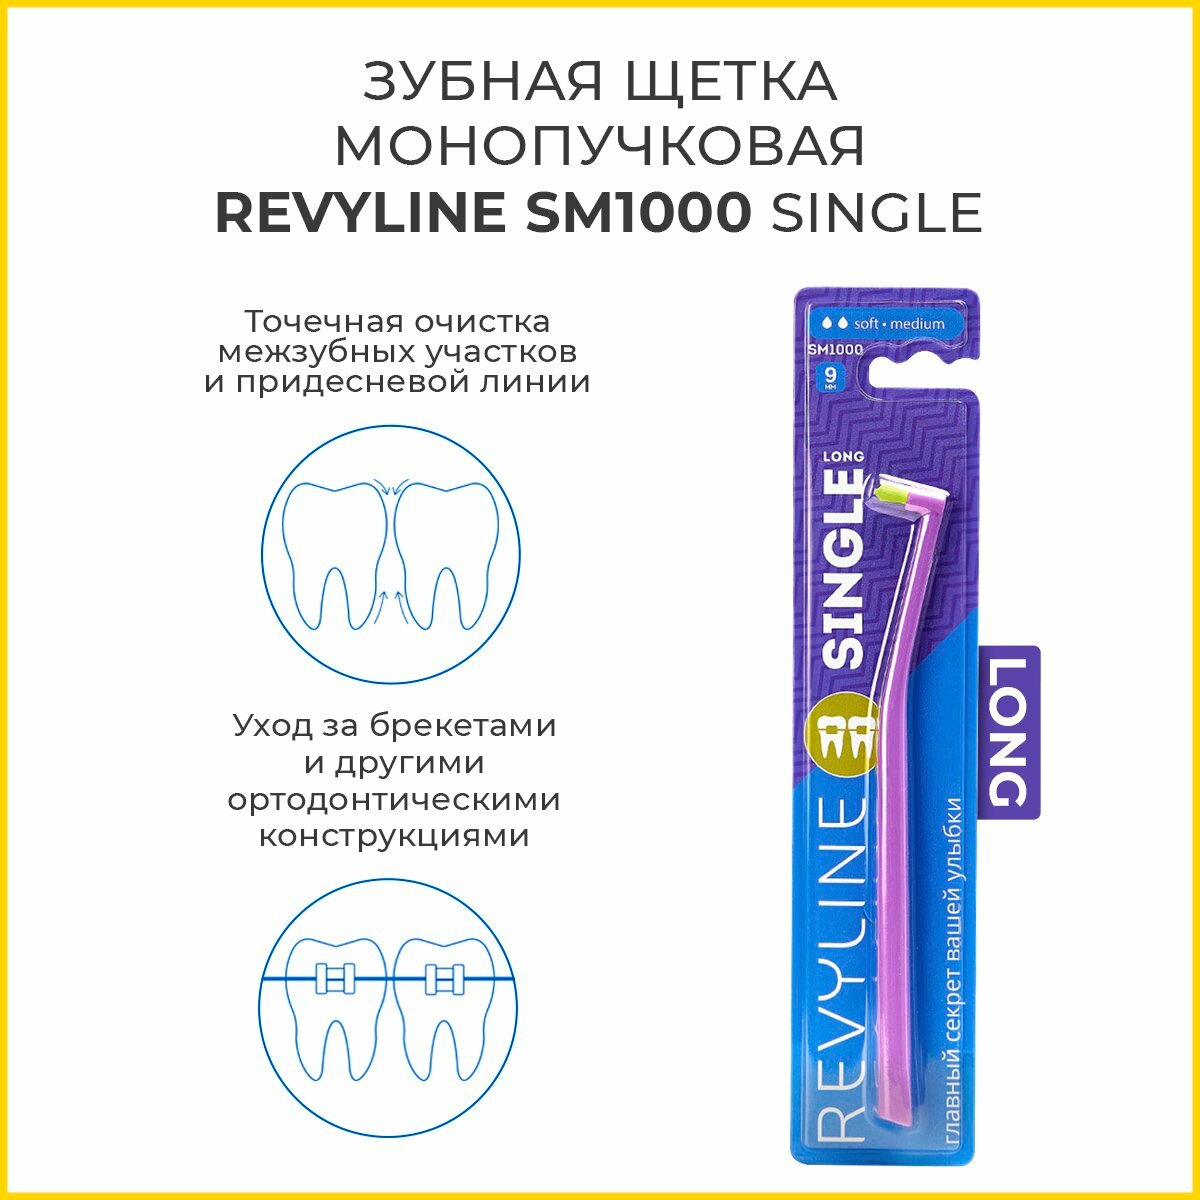 Зубная щетка Revyline SM1000 Single Long, монопучковая, фиолетовая. Ревилайн